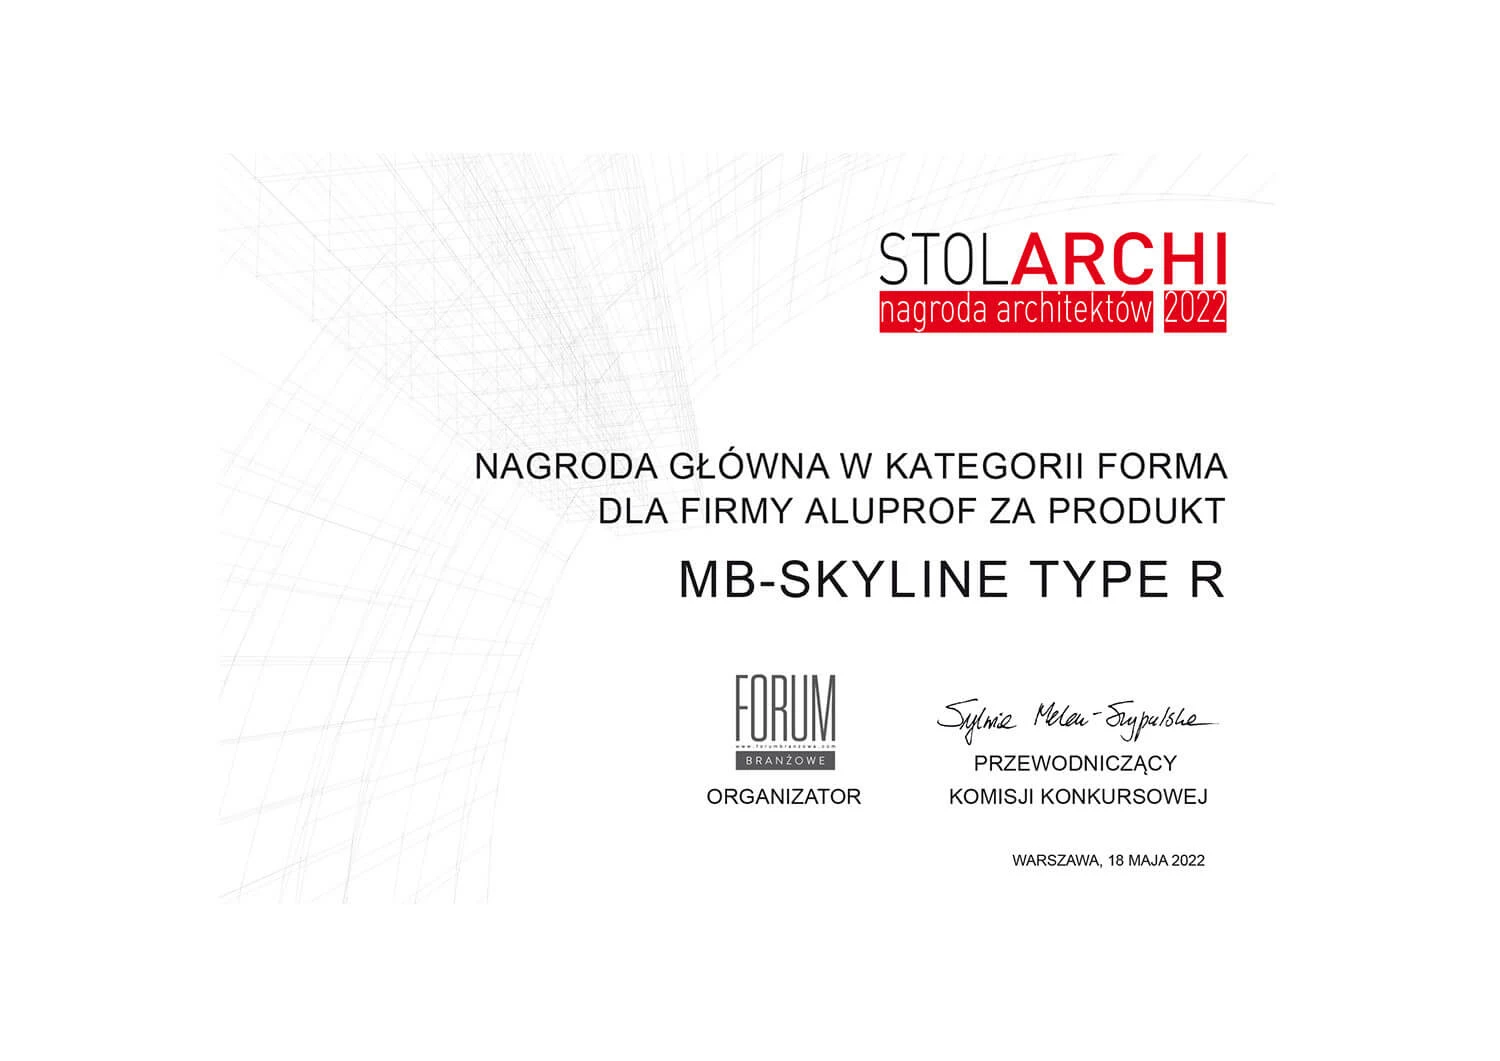 STOLARCHI - Nagroda główna w kategorii forma za produkt MB-SKYLINE TYPE R